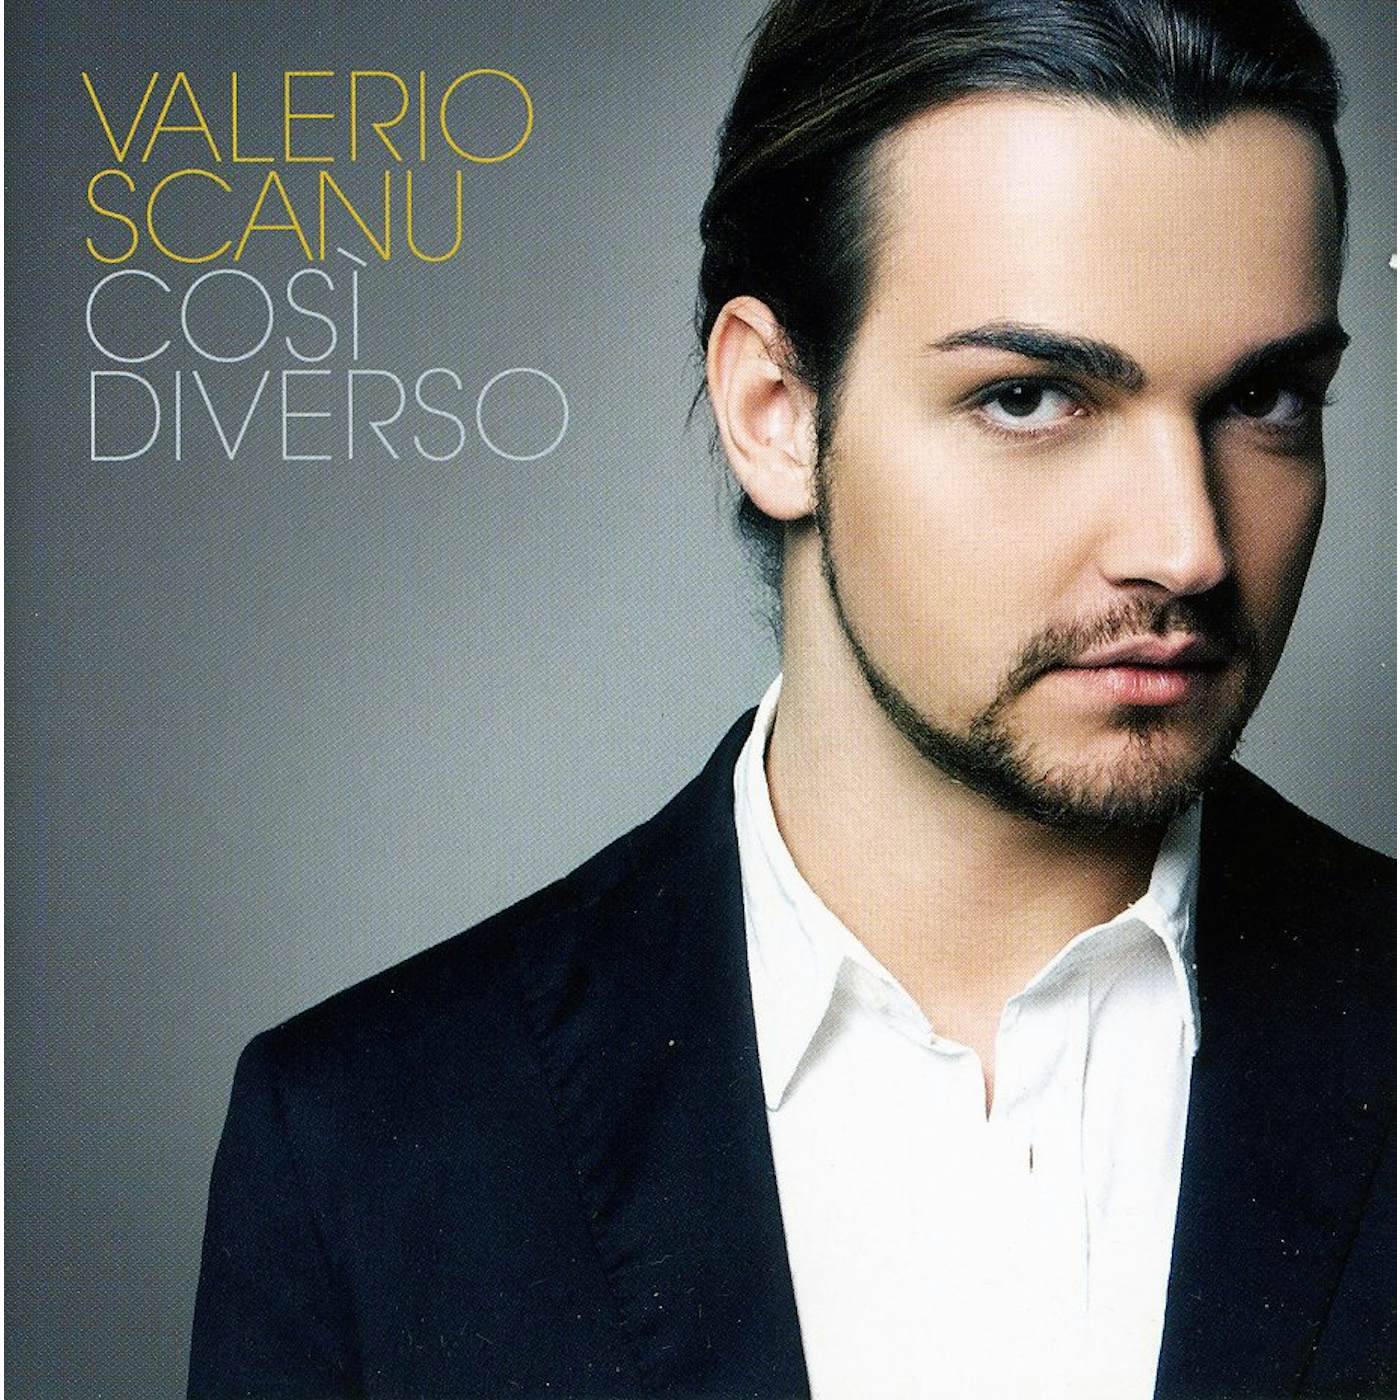 Valerio Scanu COSI DIVERSO CD